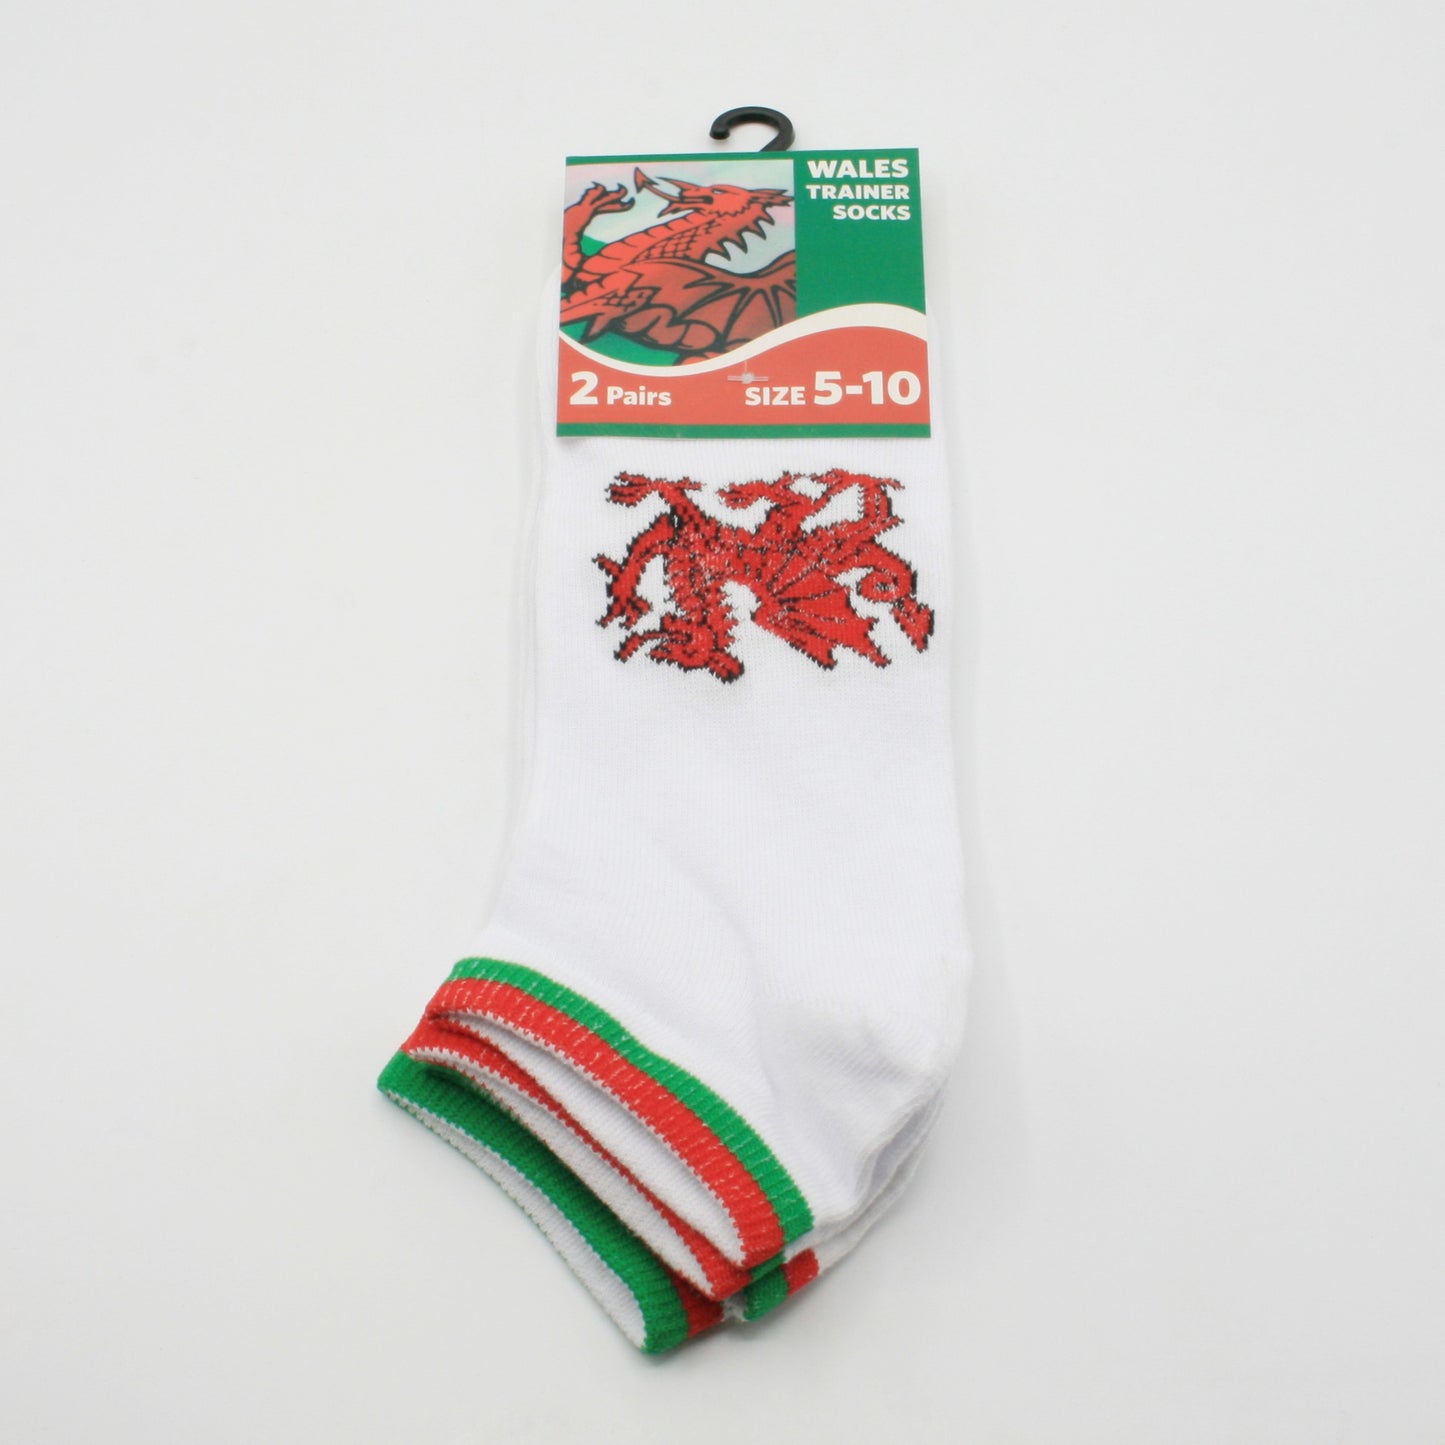 Welsh Trainer Socks (2PK)